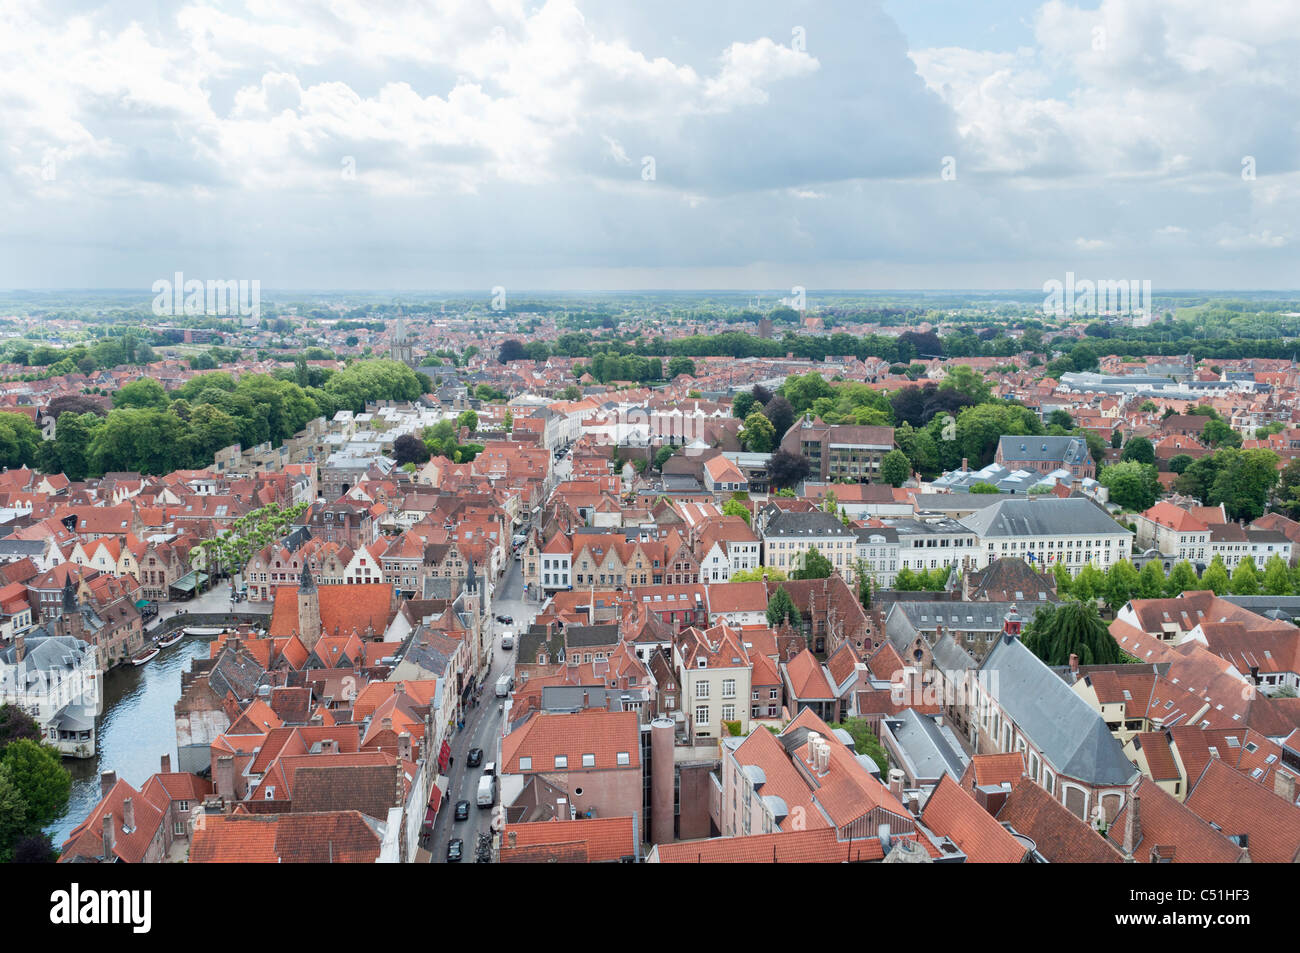 Eine Luftaufnahme der Stadt Brügge, West-Flandern, Belgien, den Belfried entnommen. Stockfoto